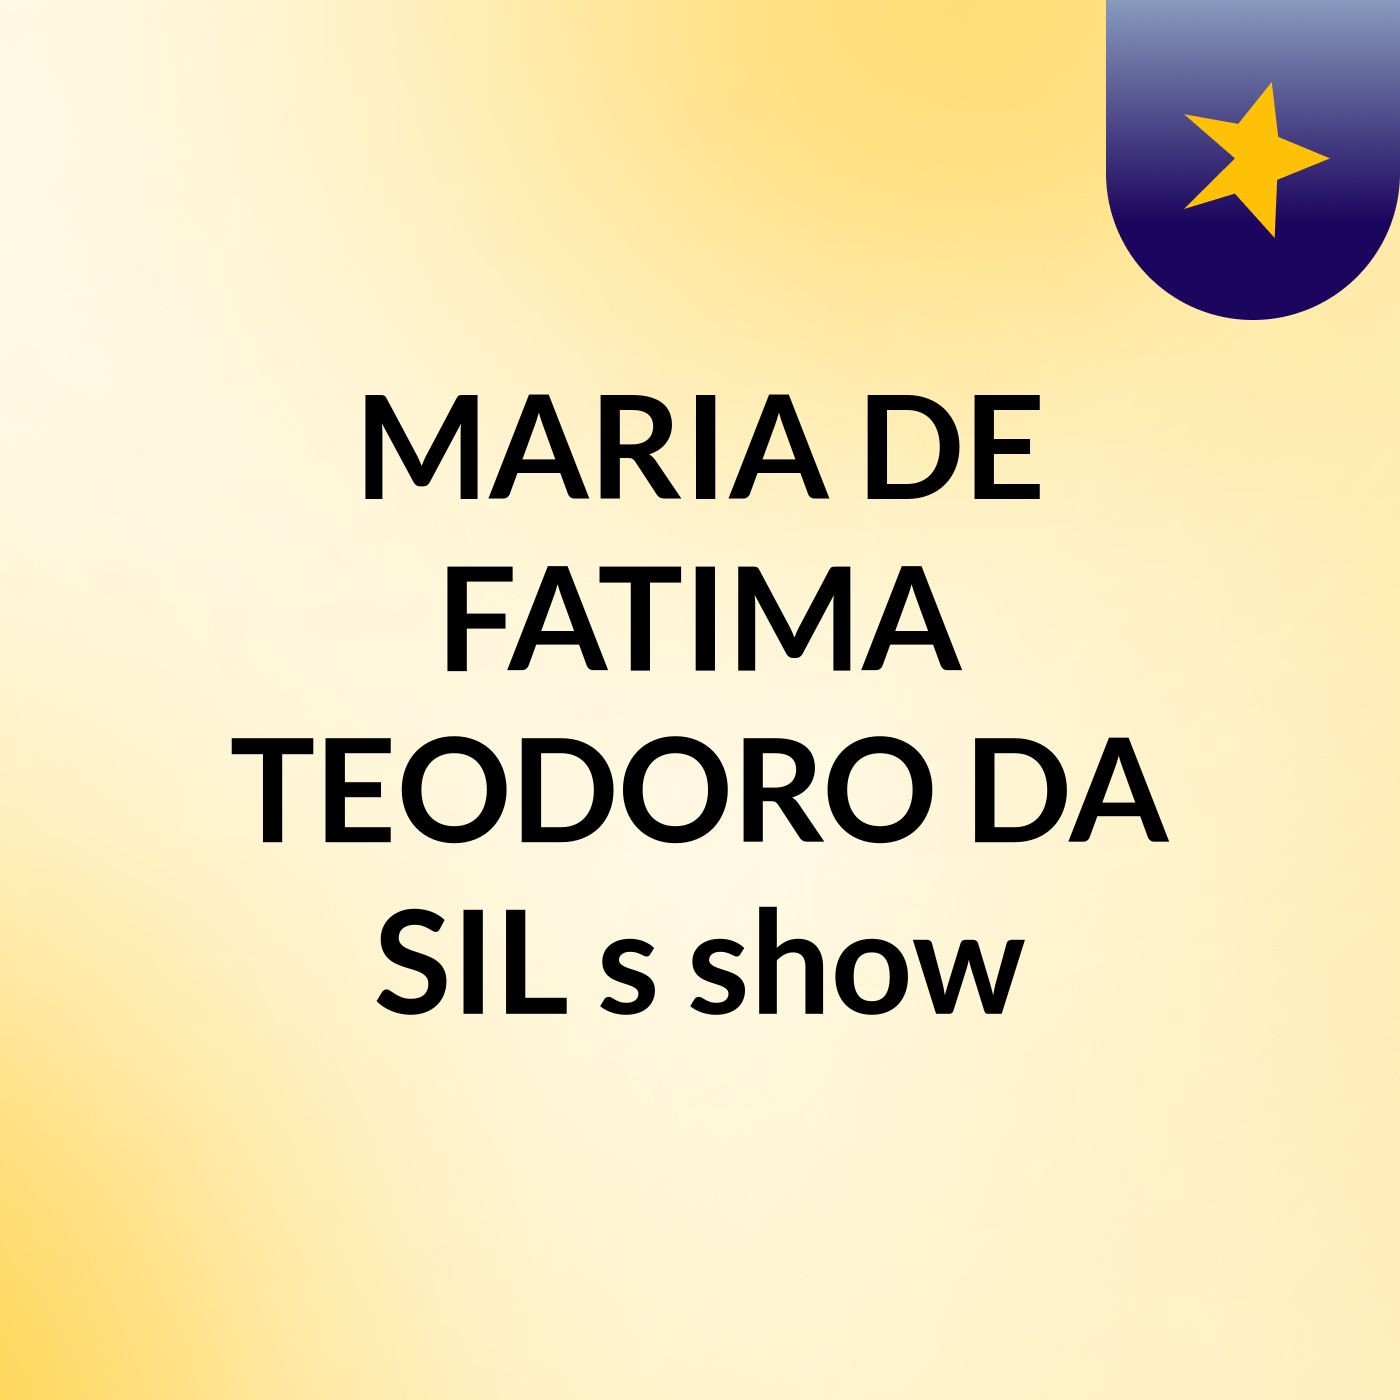 MARIA DE FATIMA TEODORO DA SIL's show